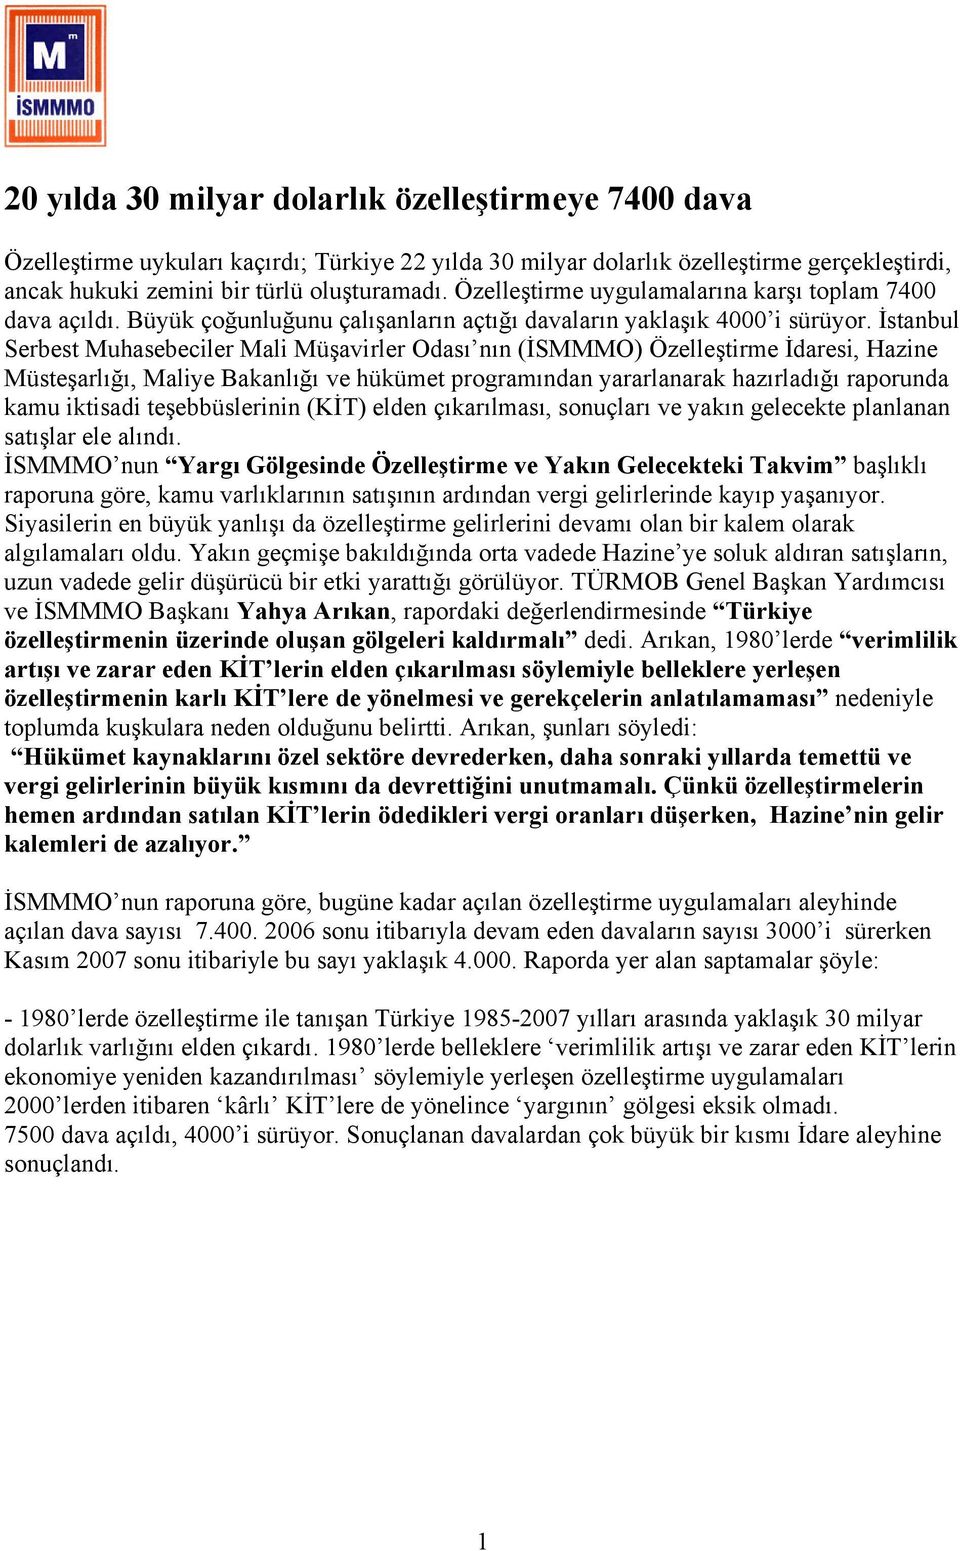 İstanbul Serbest Muhasebeciler Mali Müşavirler Odası nın (İSMMMO) Özelleştirme İdaresi, Hazine Müsteşarlığı, Maliye Bakanlığı ve hükümet programından yararlanarak hazırladığı raporunda kamu iktisadi